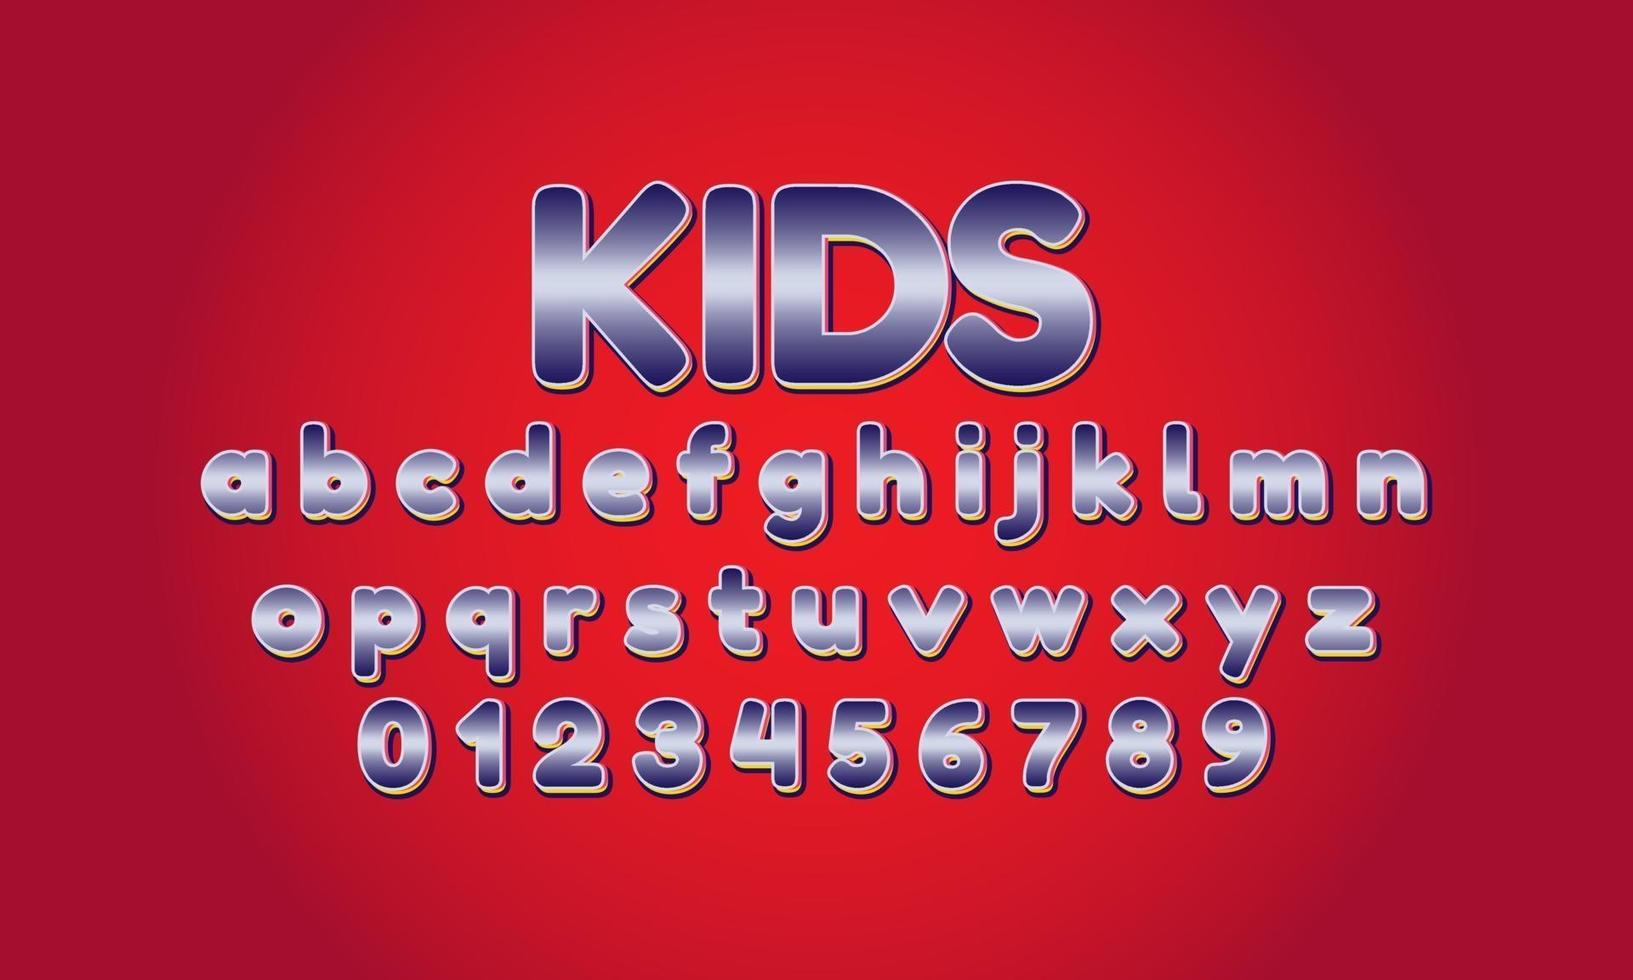 alfabeto de fuente para niños vector